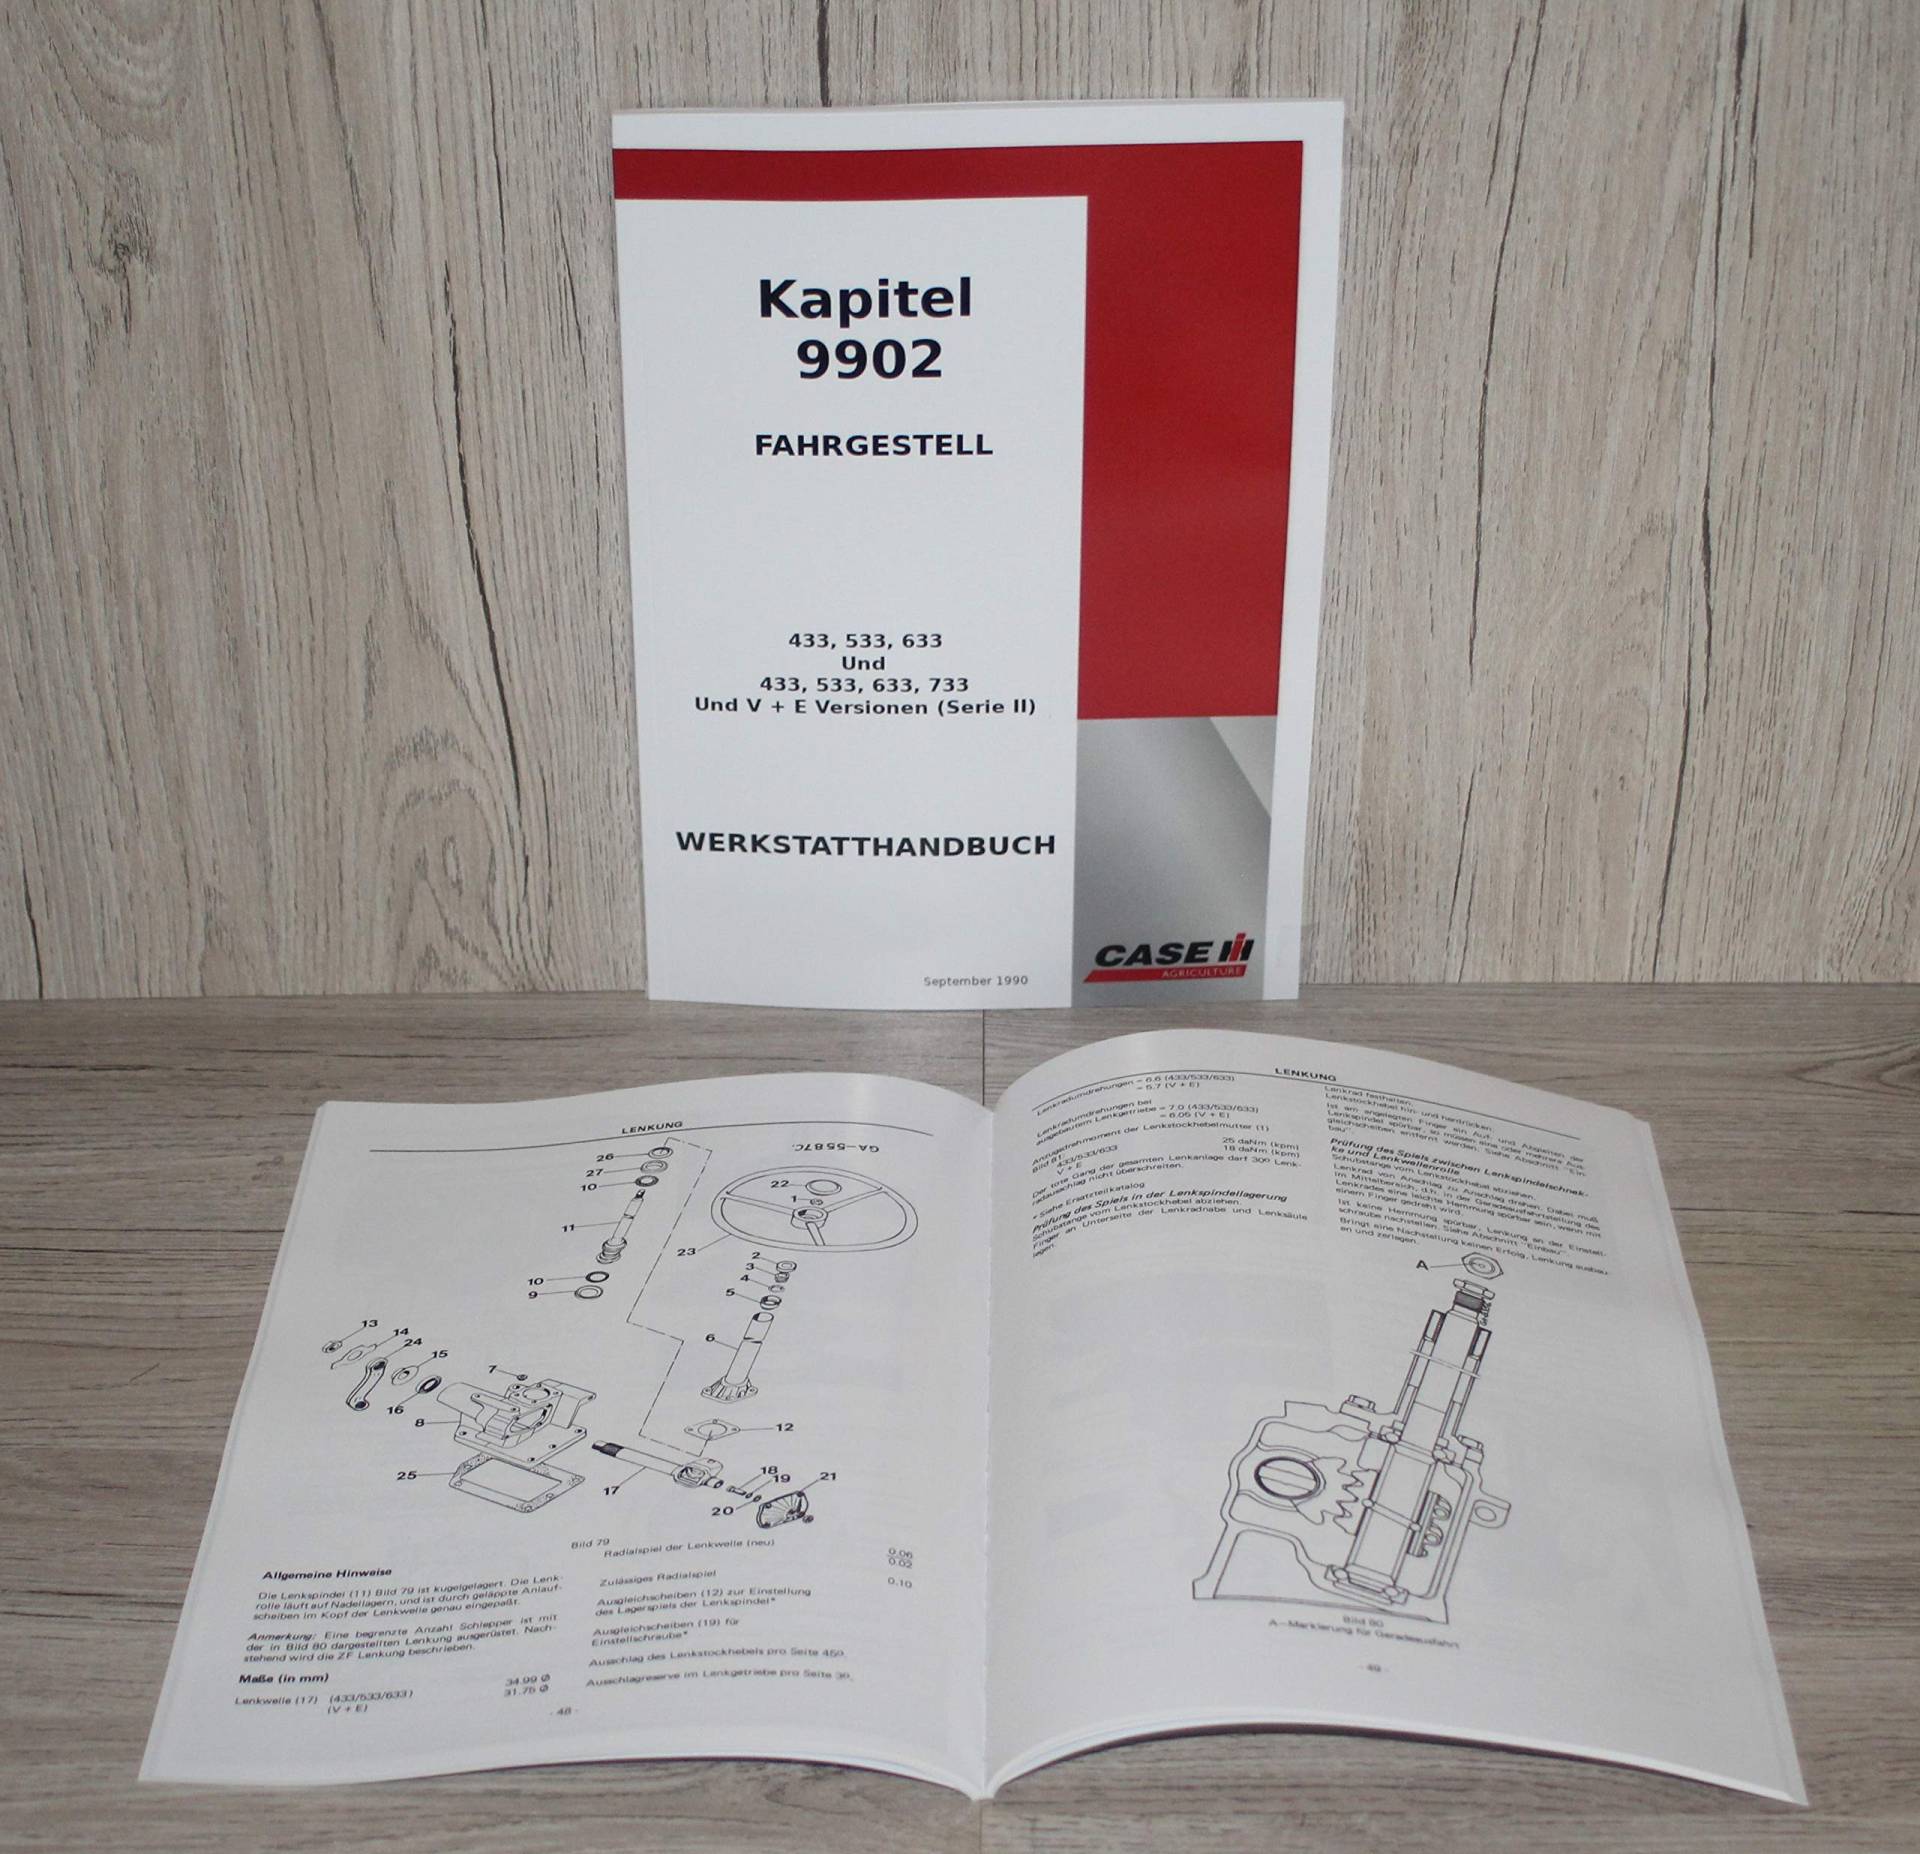 IHC Case Werkstatthandbuch Traktor Fahrgestell 433 533 633 733 und V+E (Serie II) Kapitel 9902 Fahrgestell von Eil Bulldog Versand